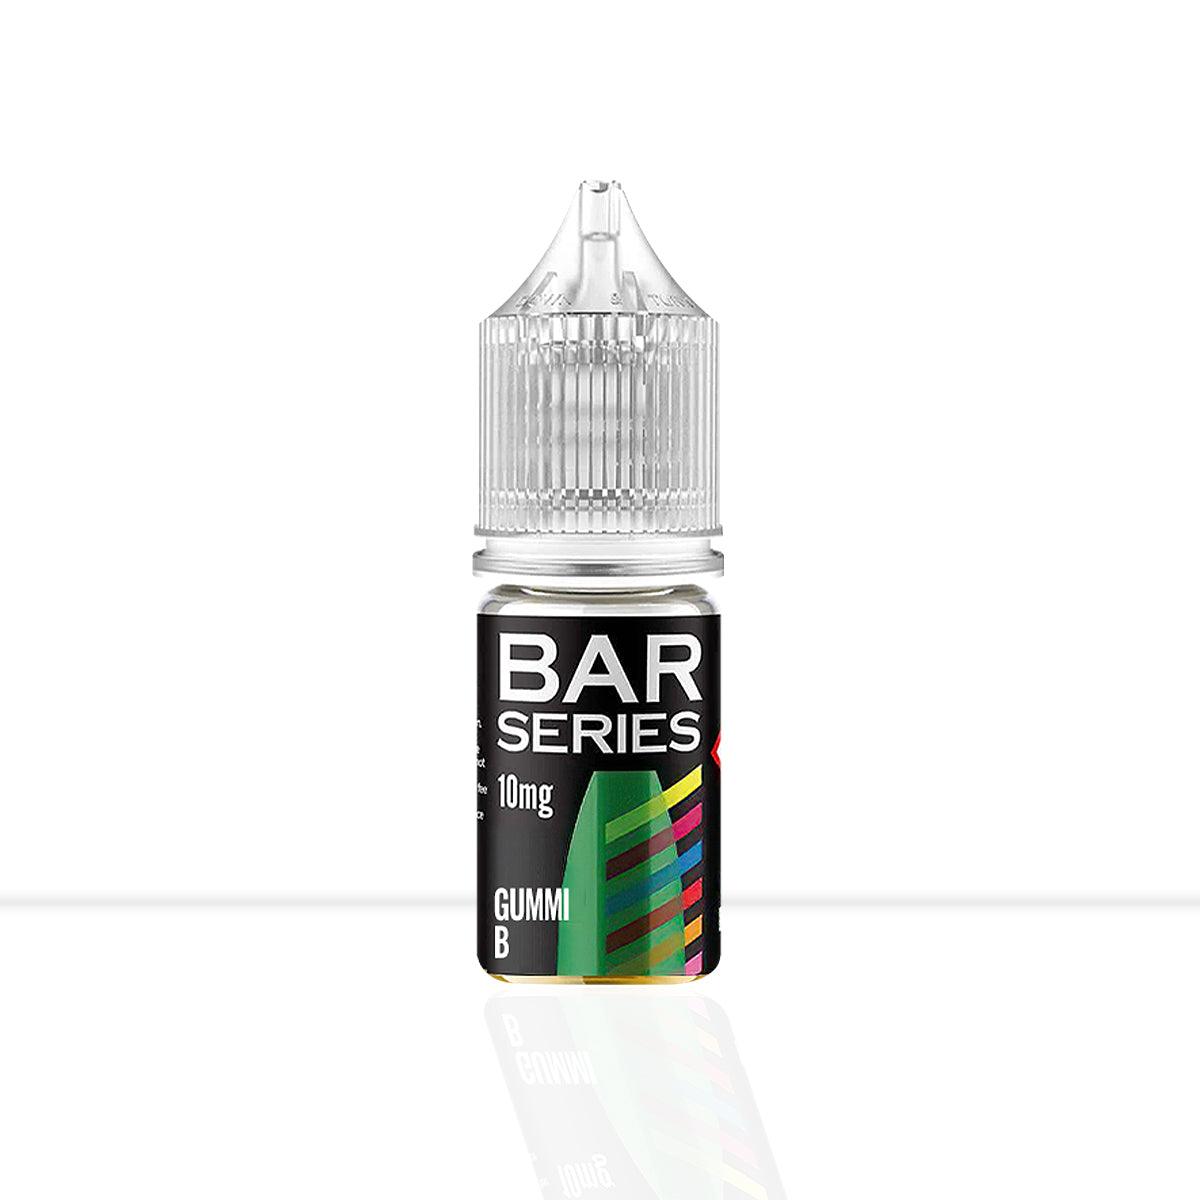 Gummy B Nic Salt E-Liquid Bar Series - Gummy B Nic Salt E-Liquid Bar Series - E Liquid